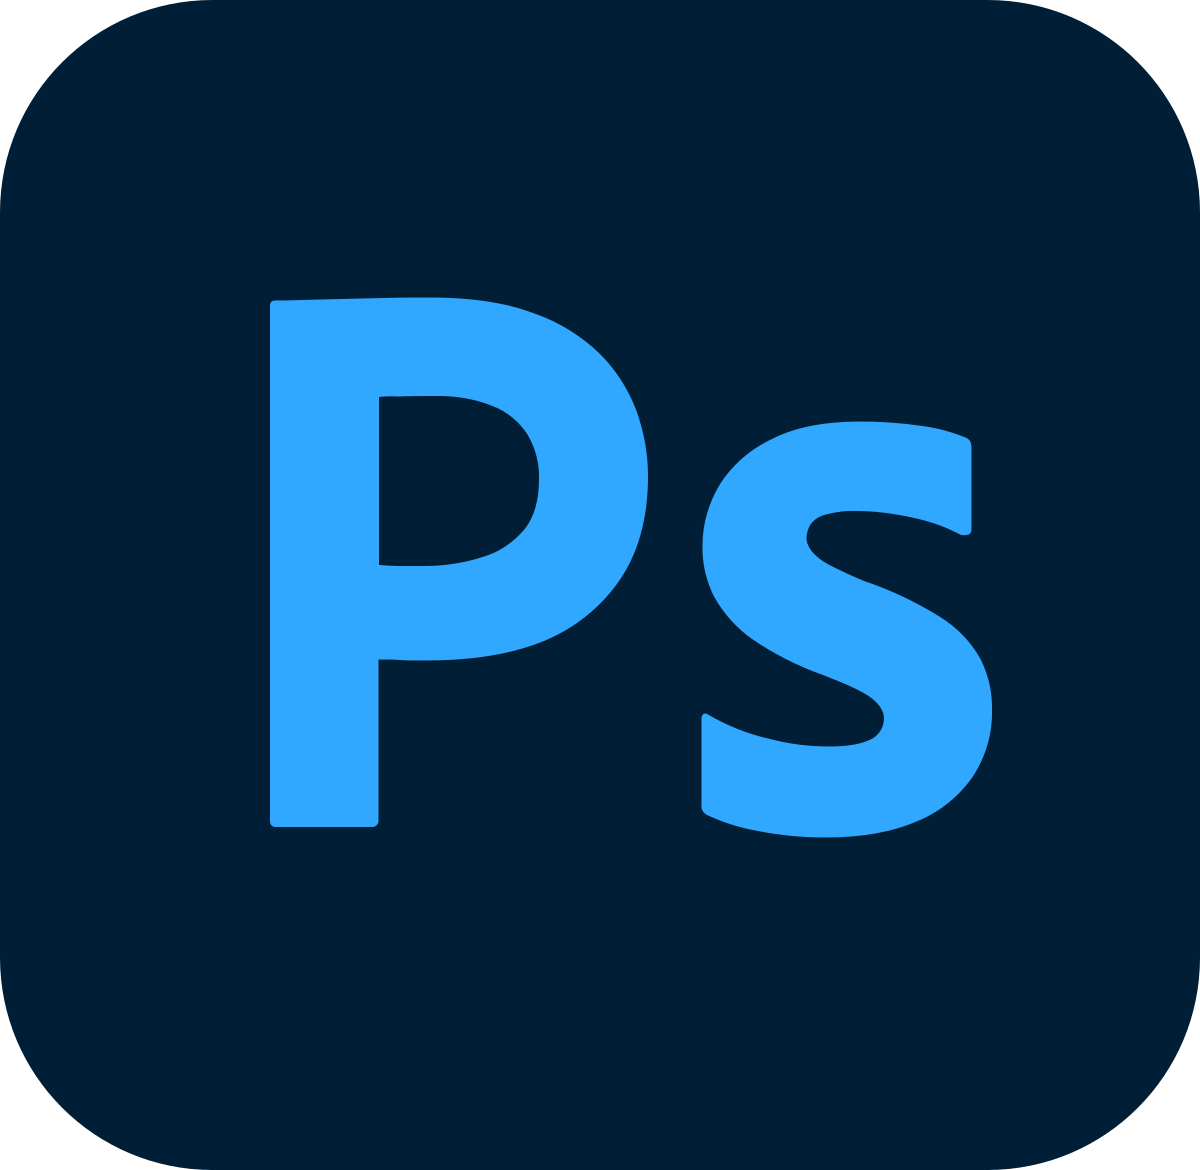 Utilisation d’un logiciel d’édition d'image : Photoshop, GIMP, Illustrator